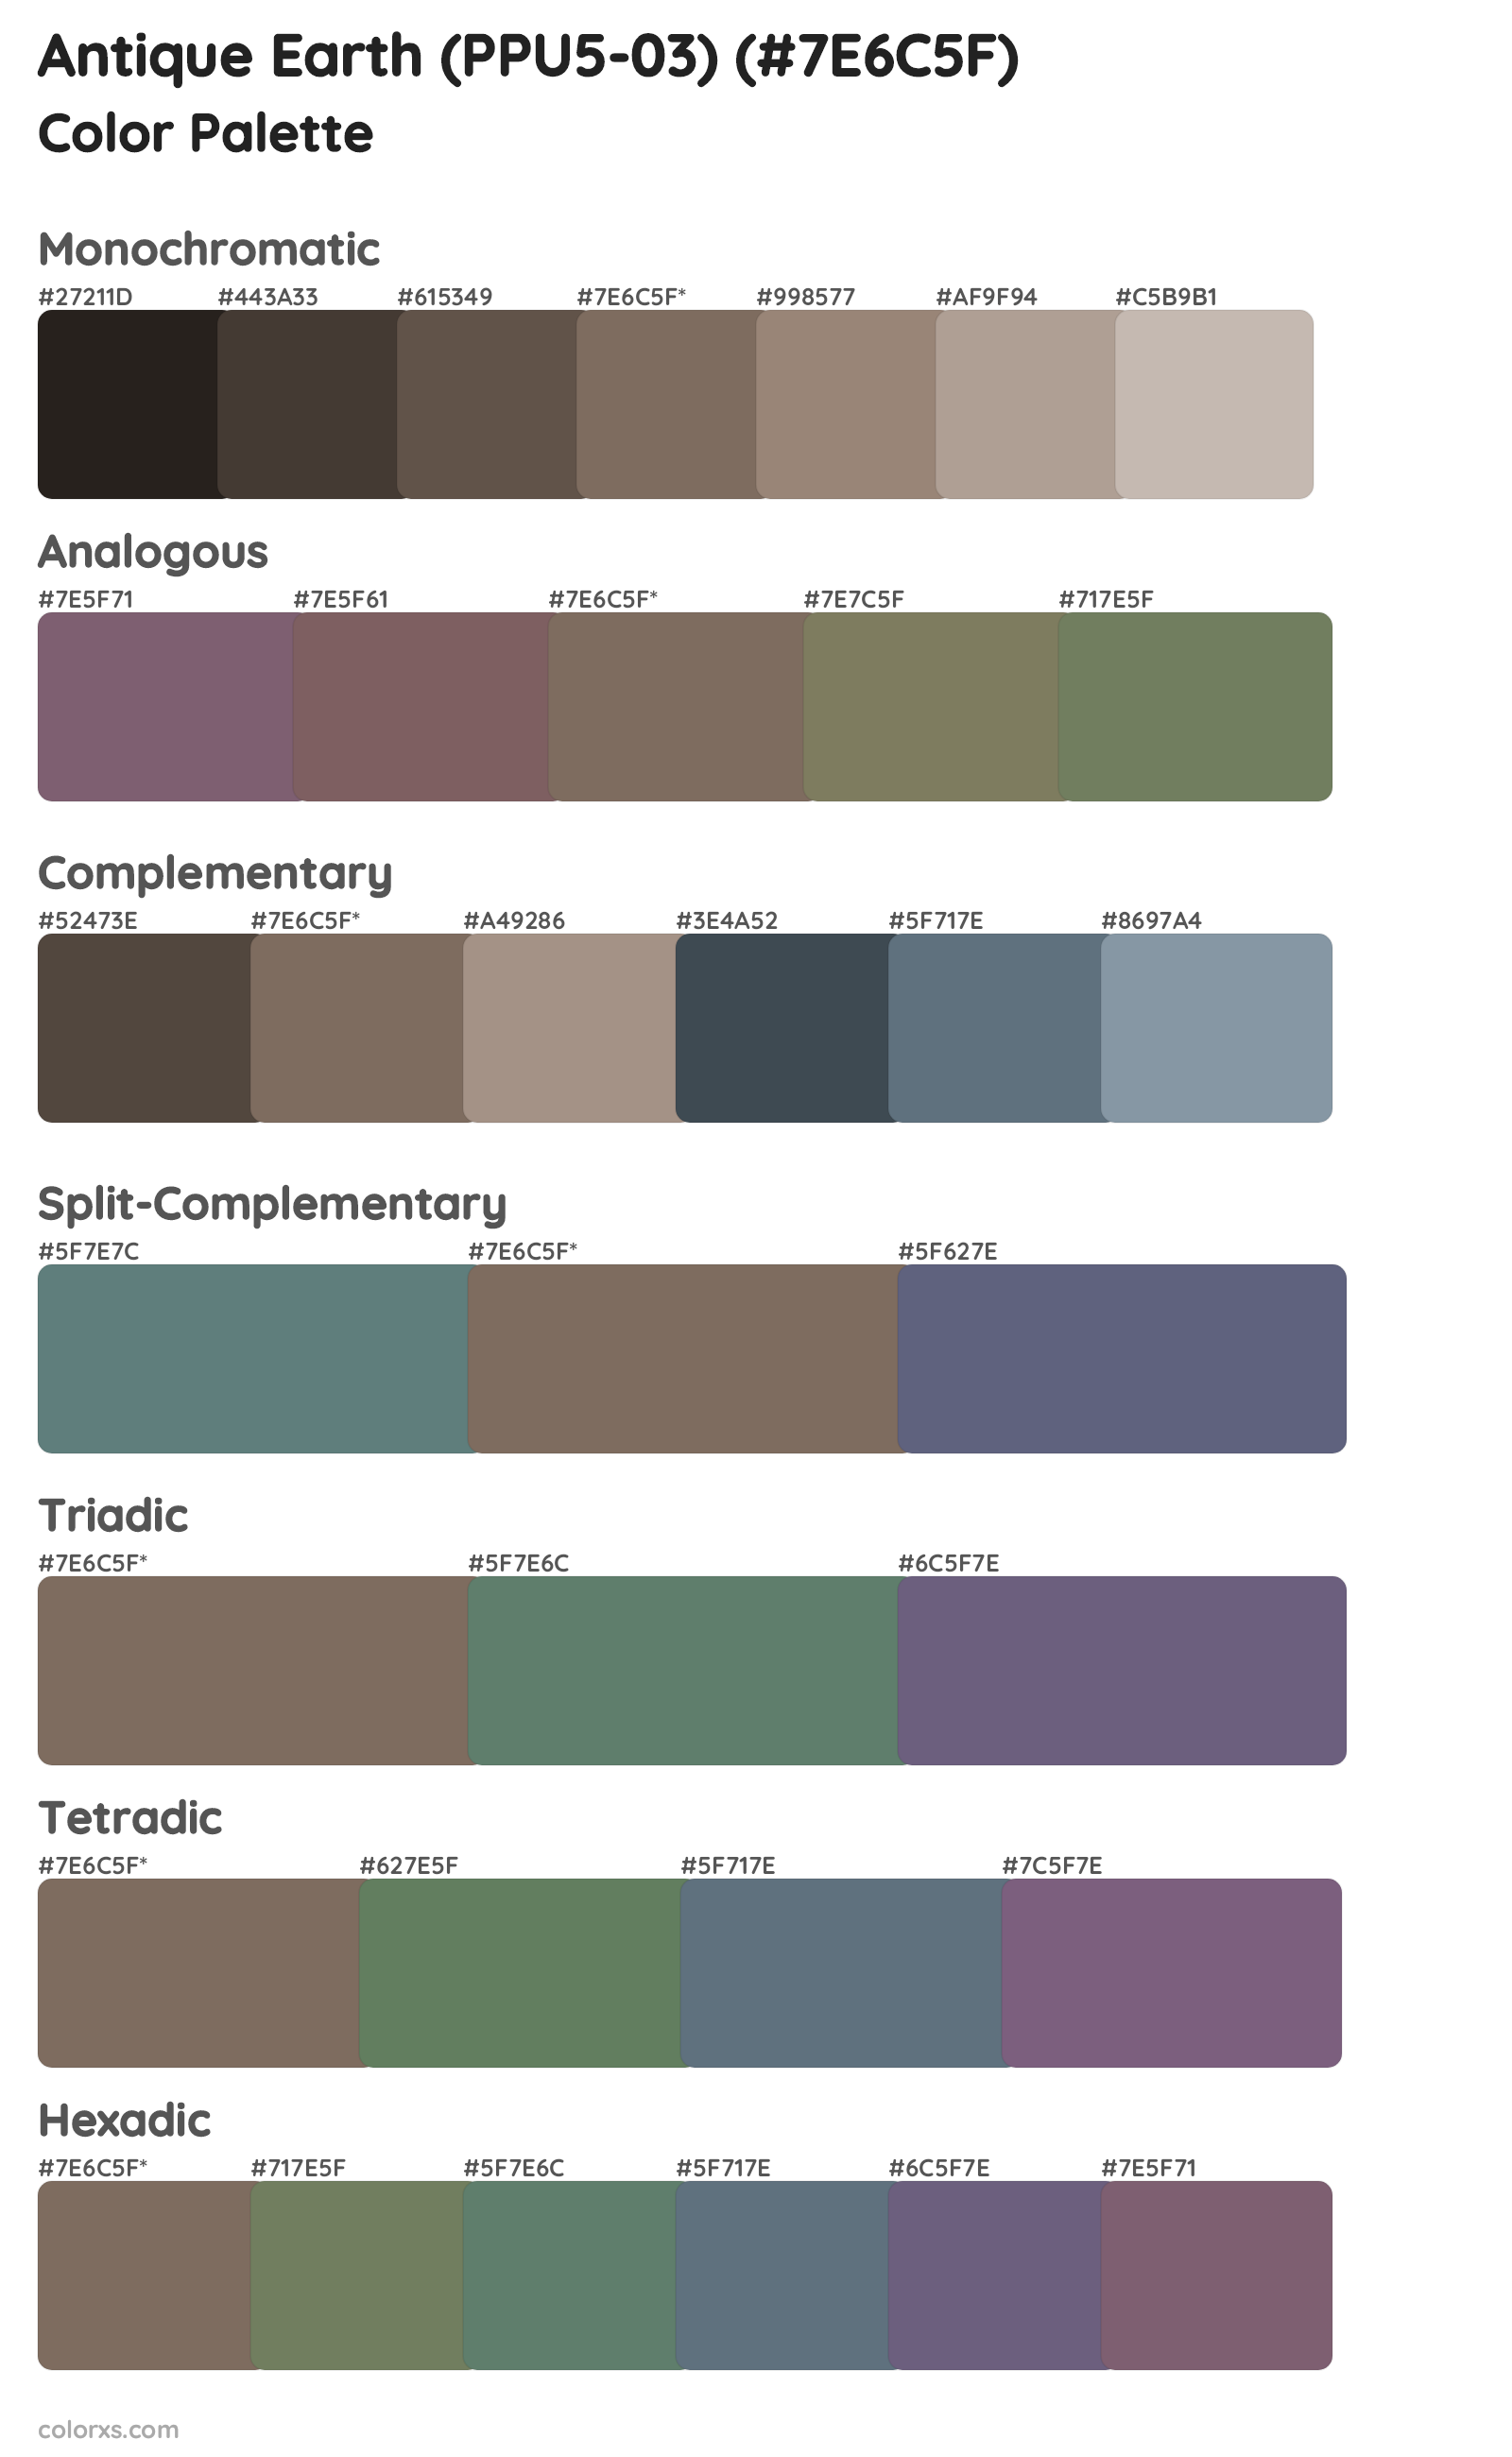 Antique Earth (PPU5-03) Color Scheme Palettes